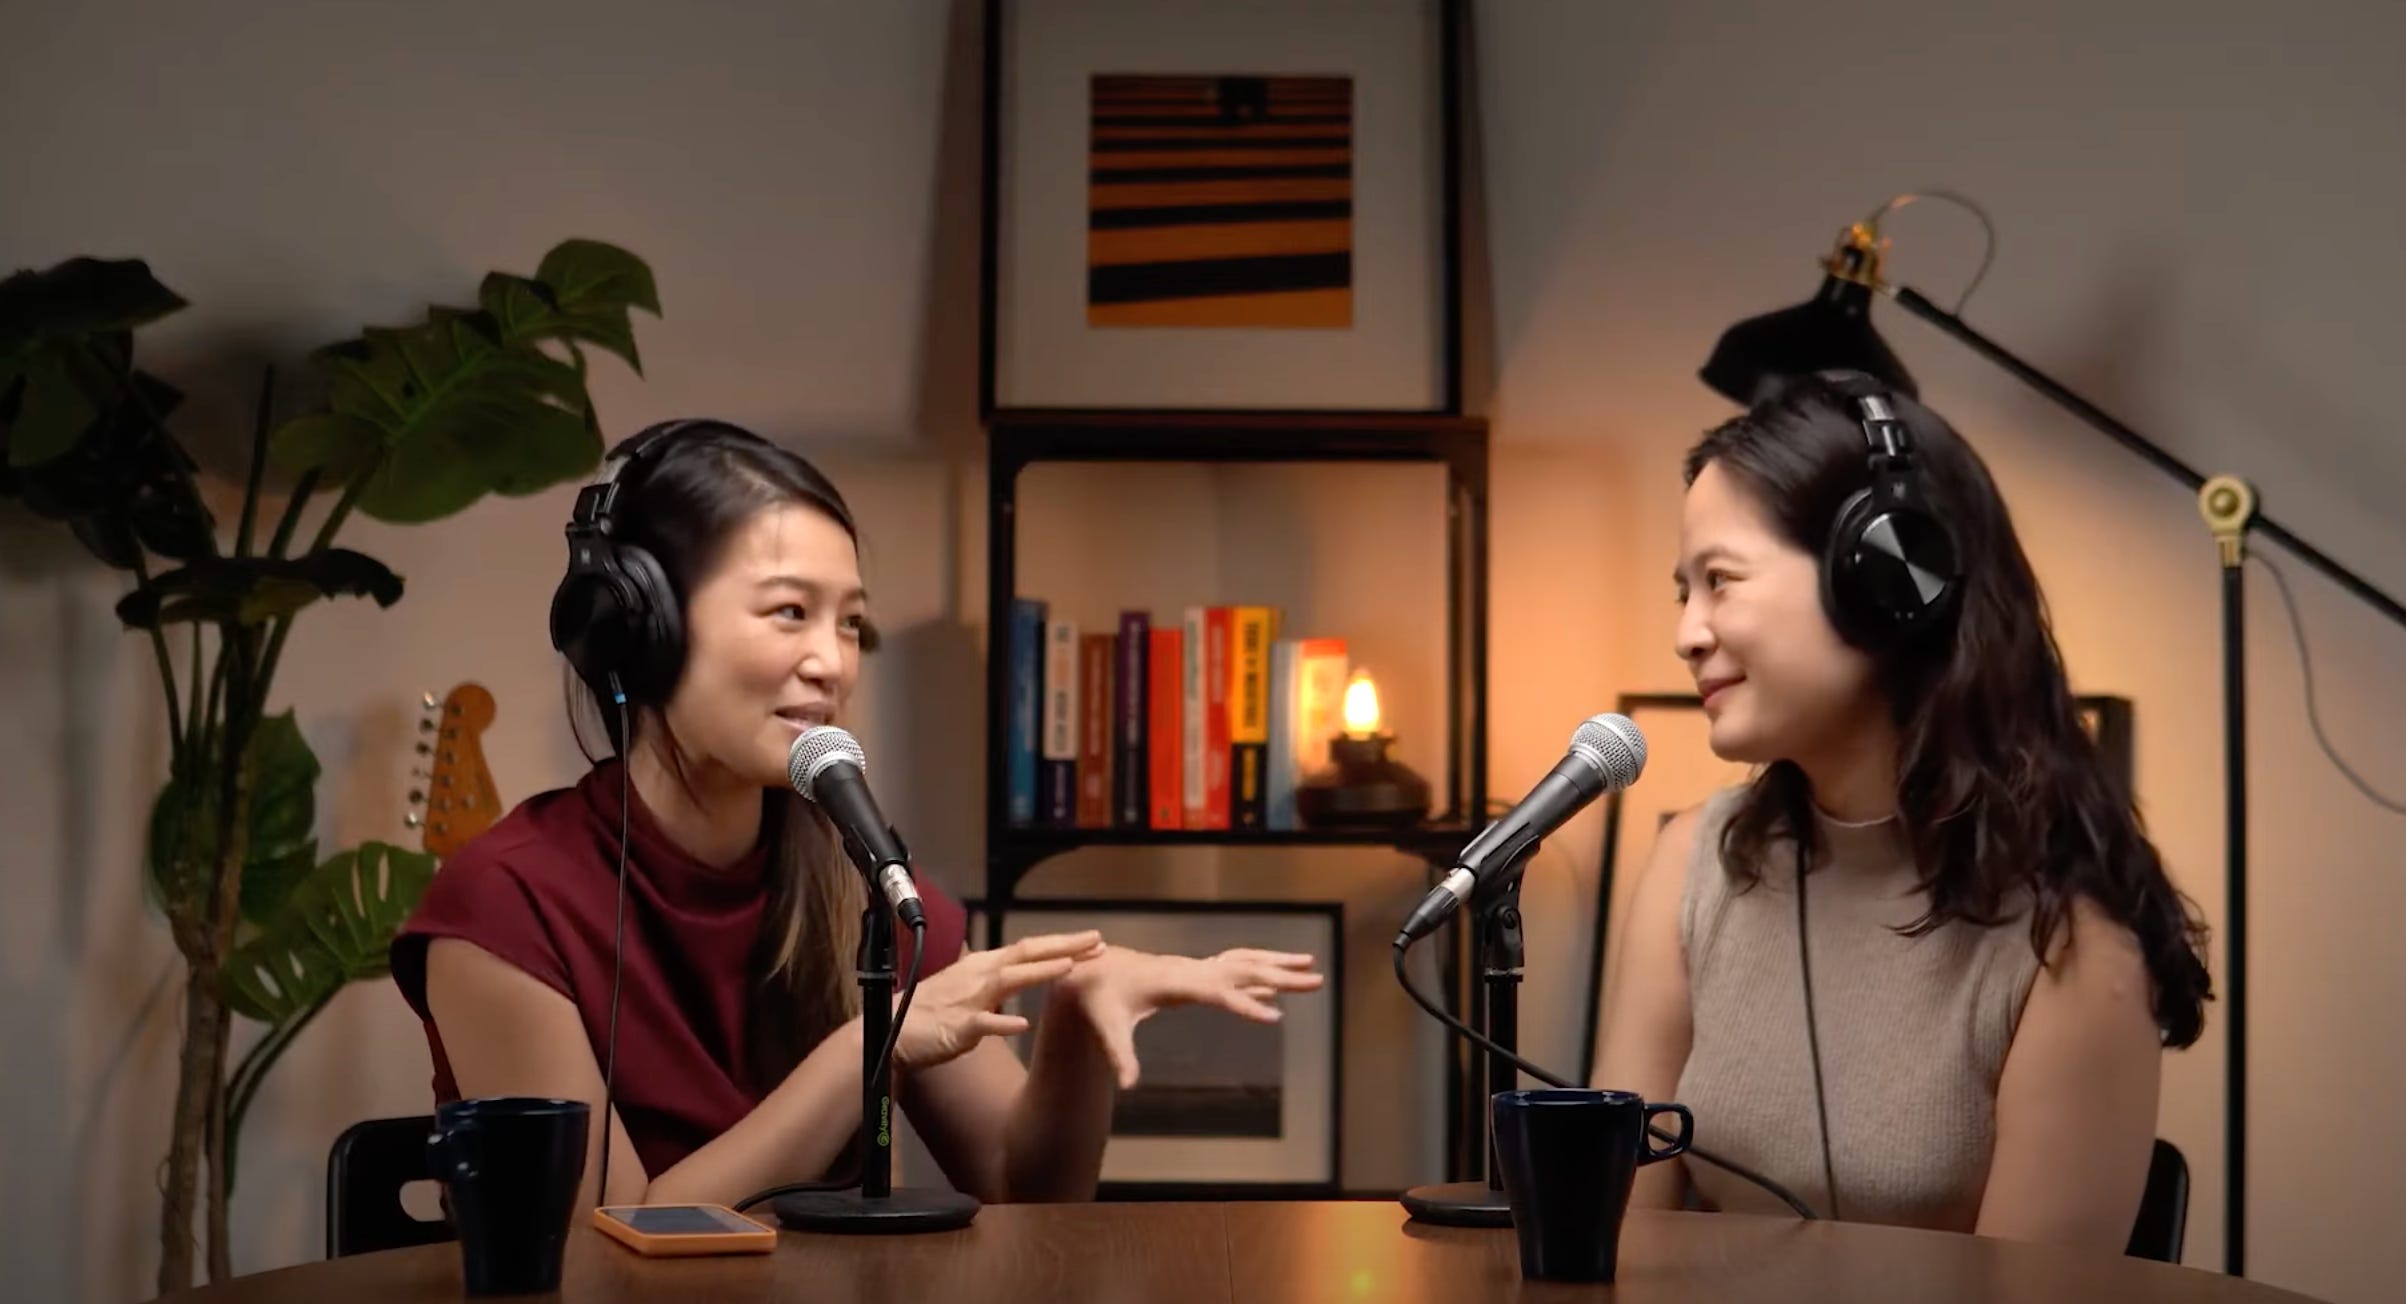 Wong (rechts) nimmt mit ihrem Gast, dem malaysischen Künstler Red Hong Yi (links), einen Podcast auf.